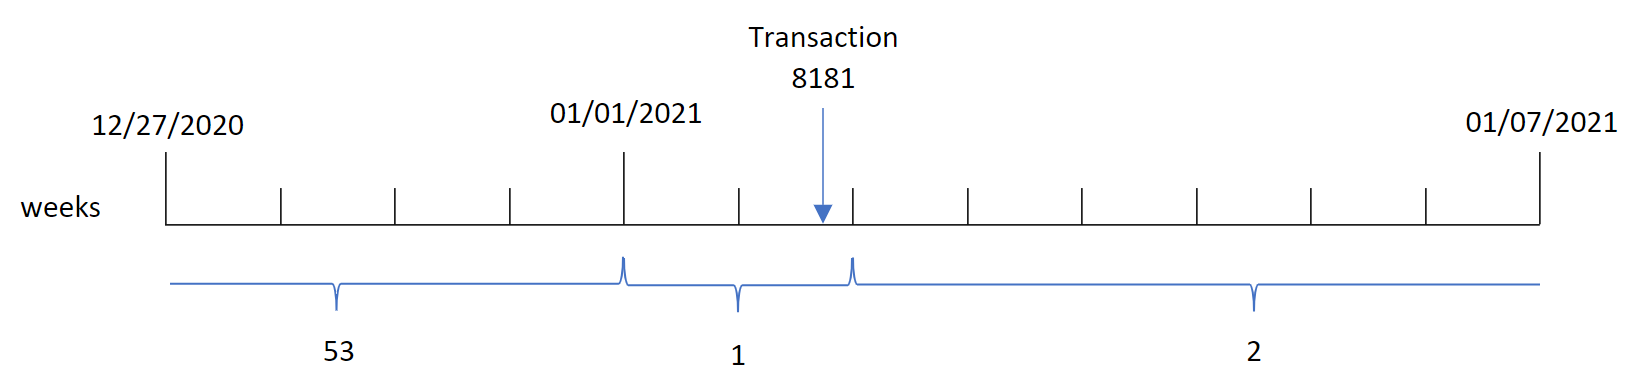 Diagramme montrant que la fonction weekyear() identifie que la transaction 8181 a eu lieu la semaine 1 et renvoie l'année de cette semaine-là, 2021.